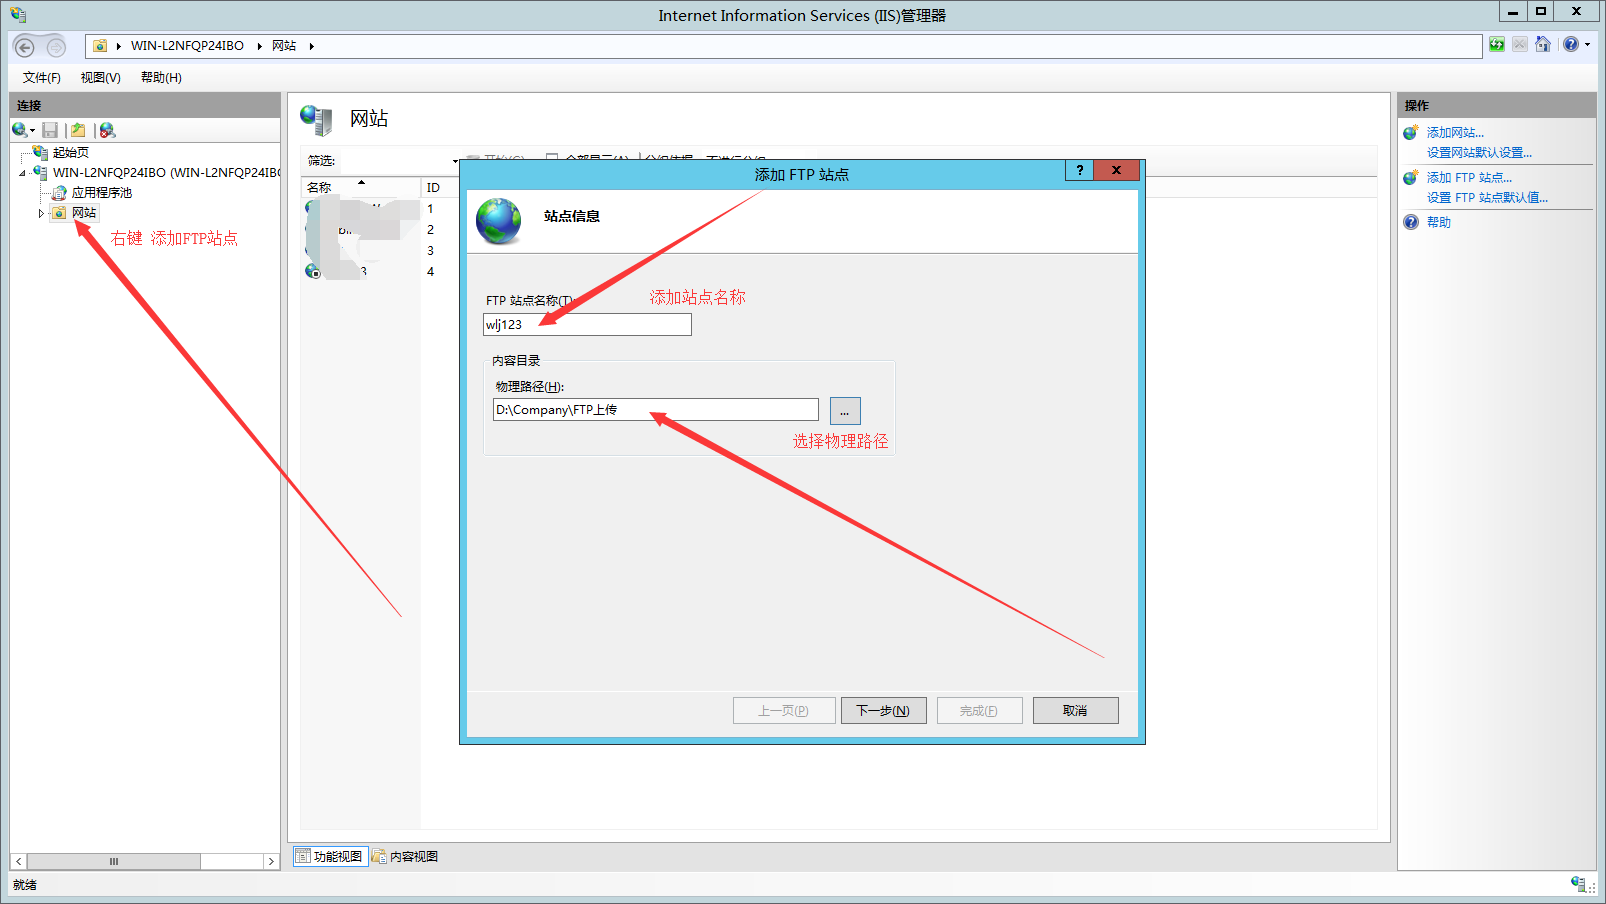 Windows Service 2012 R2 下如何建立ftp服务器_上传服务器_09